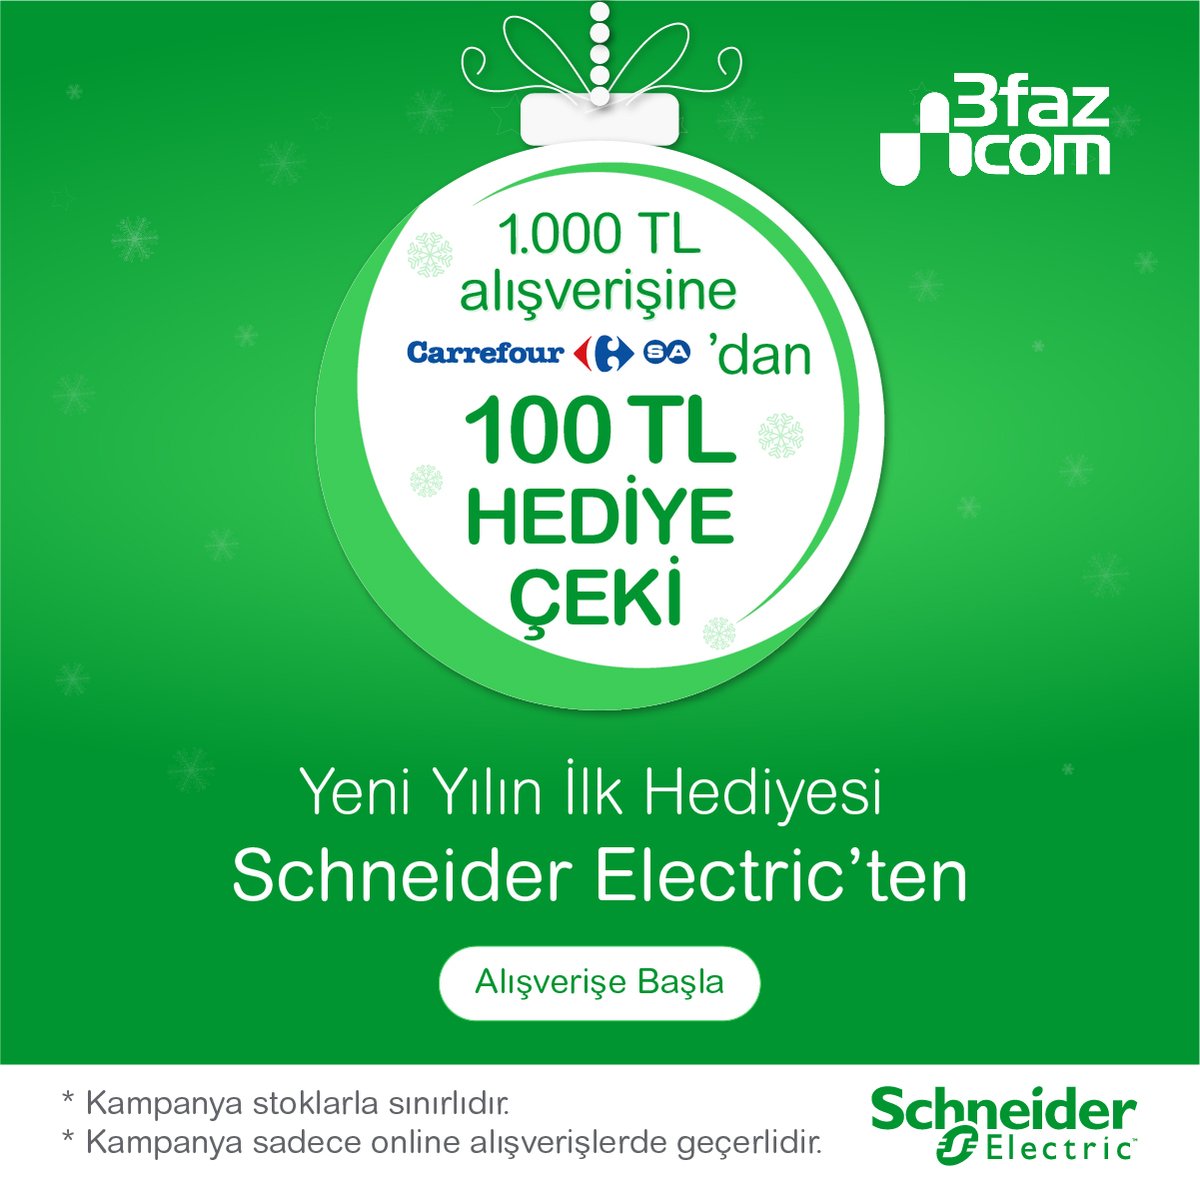 Bu kampanaya kaçmaz. 1000 TL Schneider Electric Ürünlerinden satın alın 100 TL CarrefourSa Hediye çekini hemen kazanın. Schneider Ürünleri için; 3faz.com/schneider-elec…